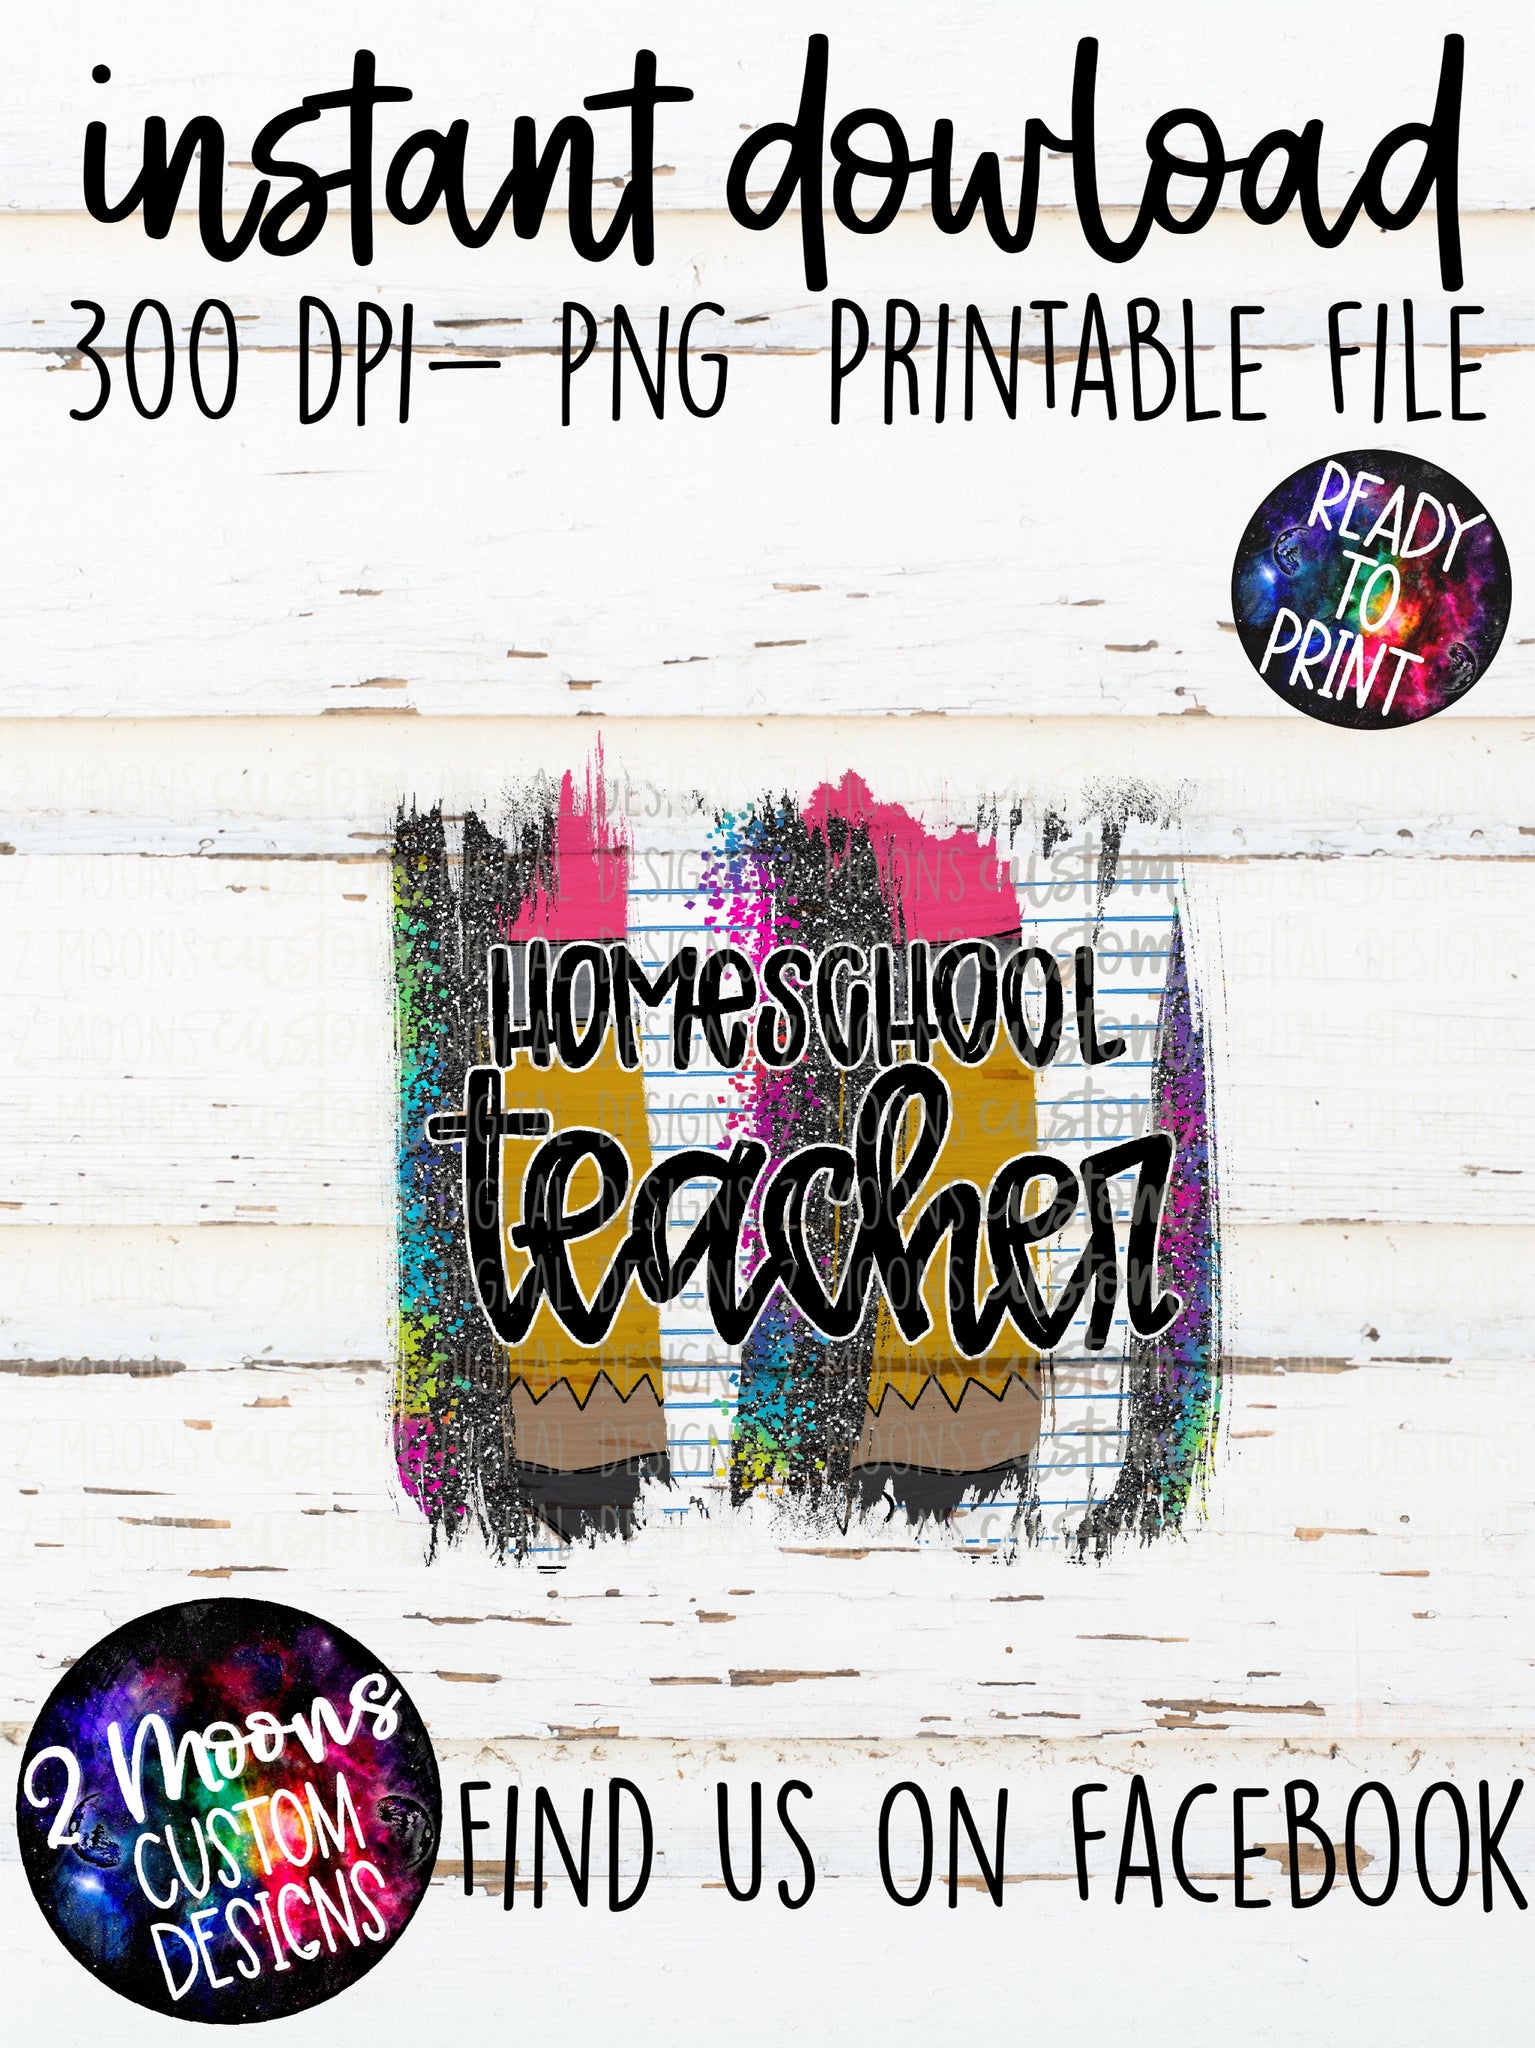 Homeschool teacher- teacher design